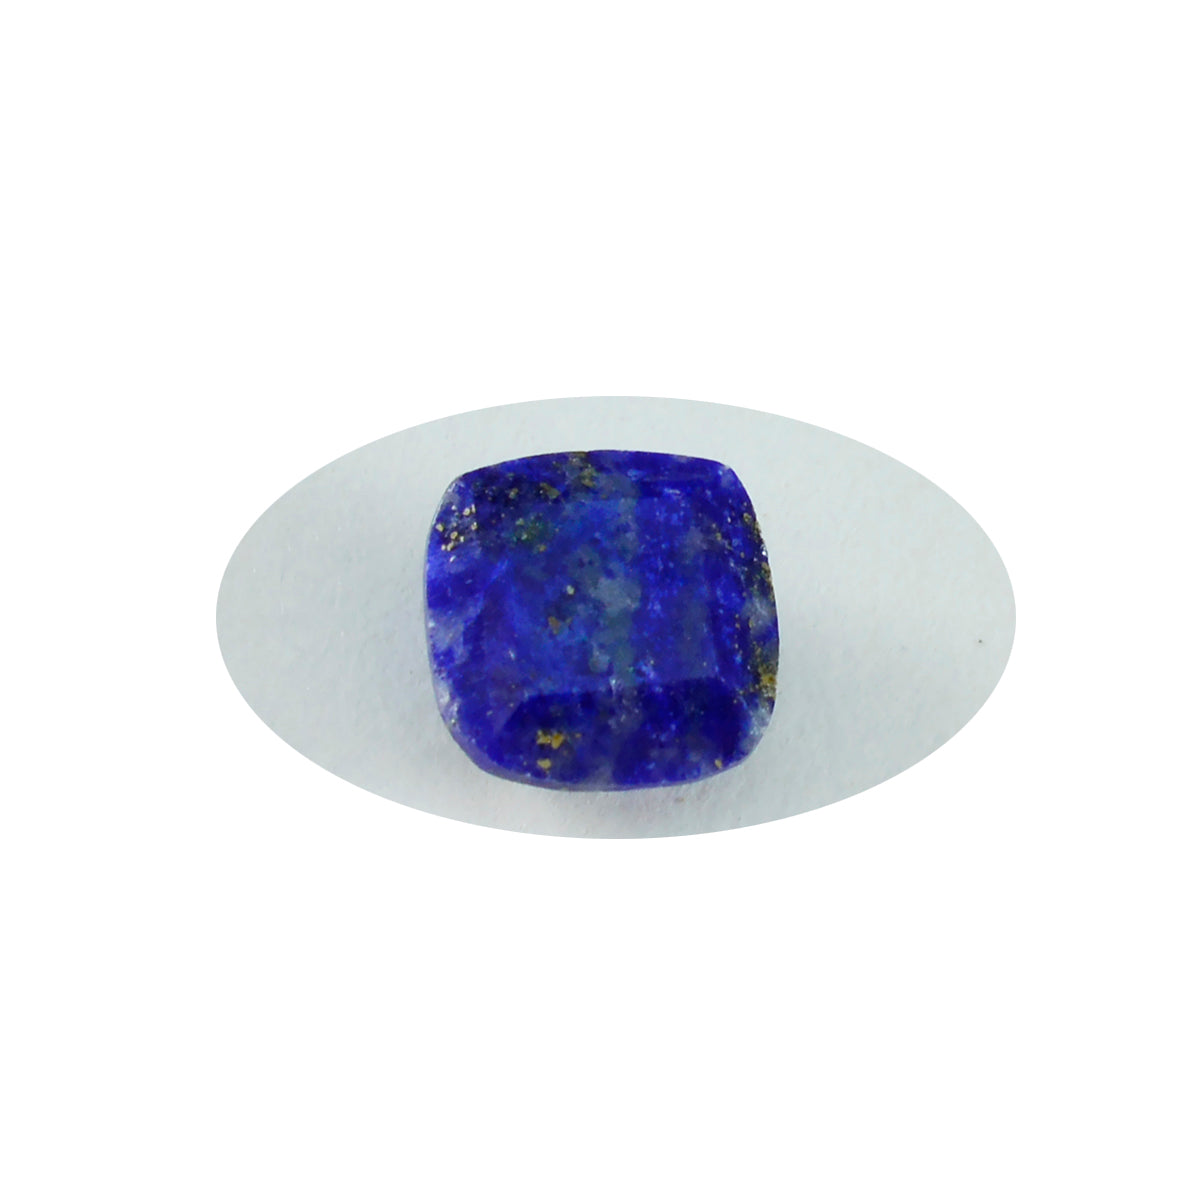 riyogems 1 шт. натуральный синий лазурит граненый 10х10 мм в форме подушки качественный камень